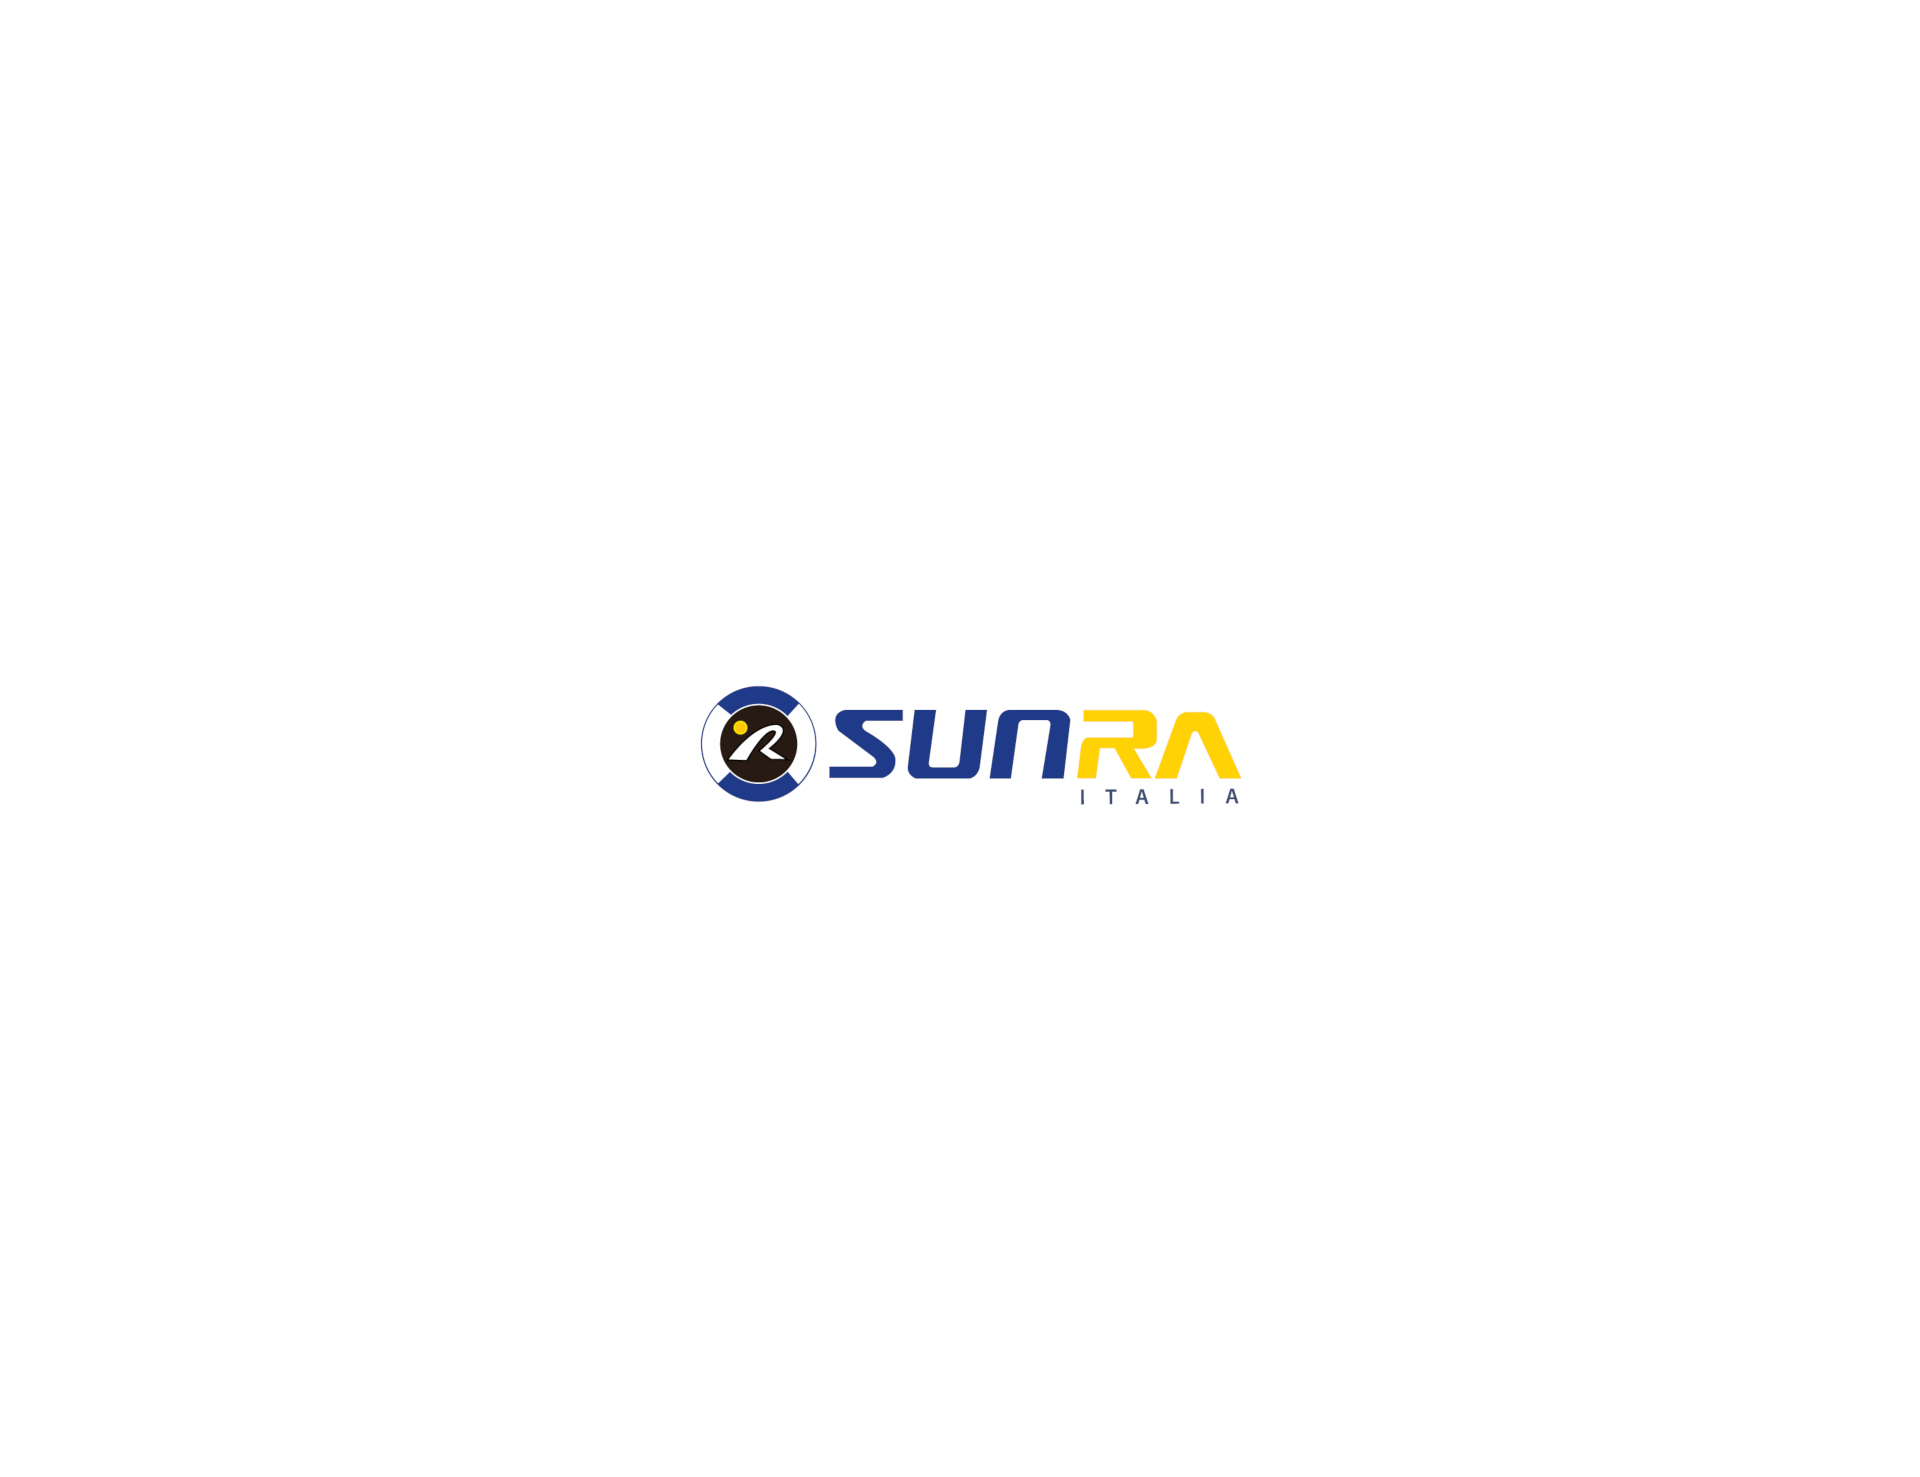 sunra_resized